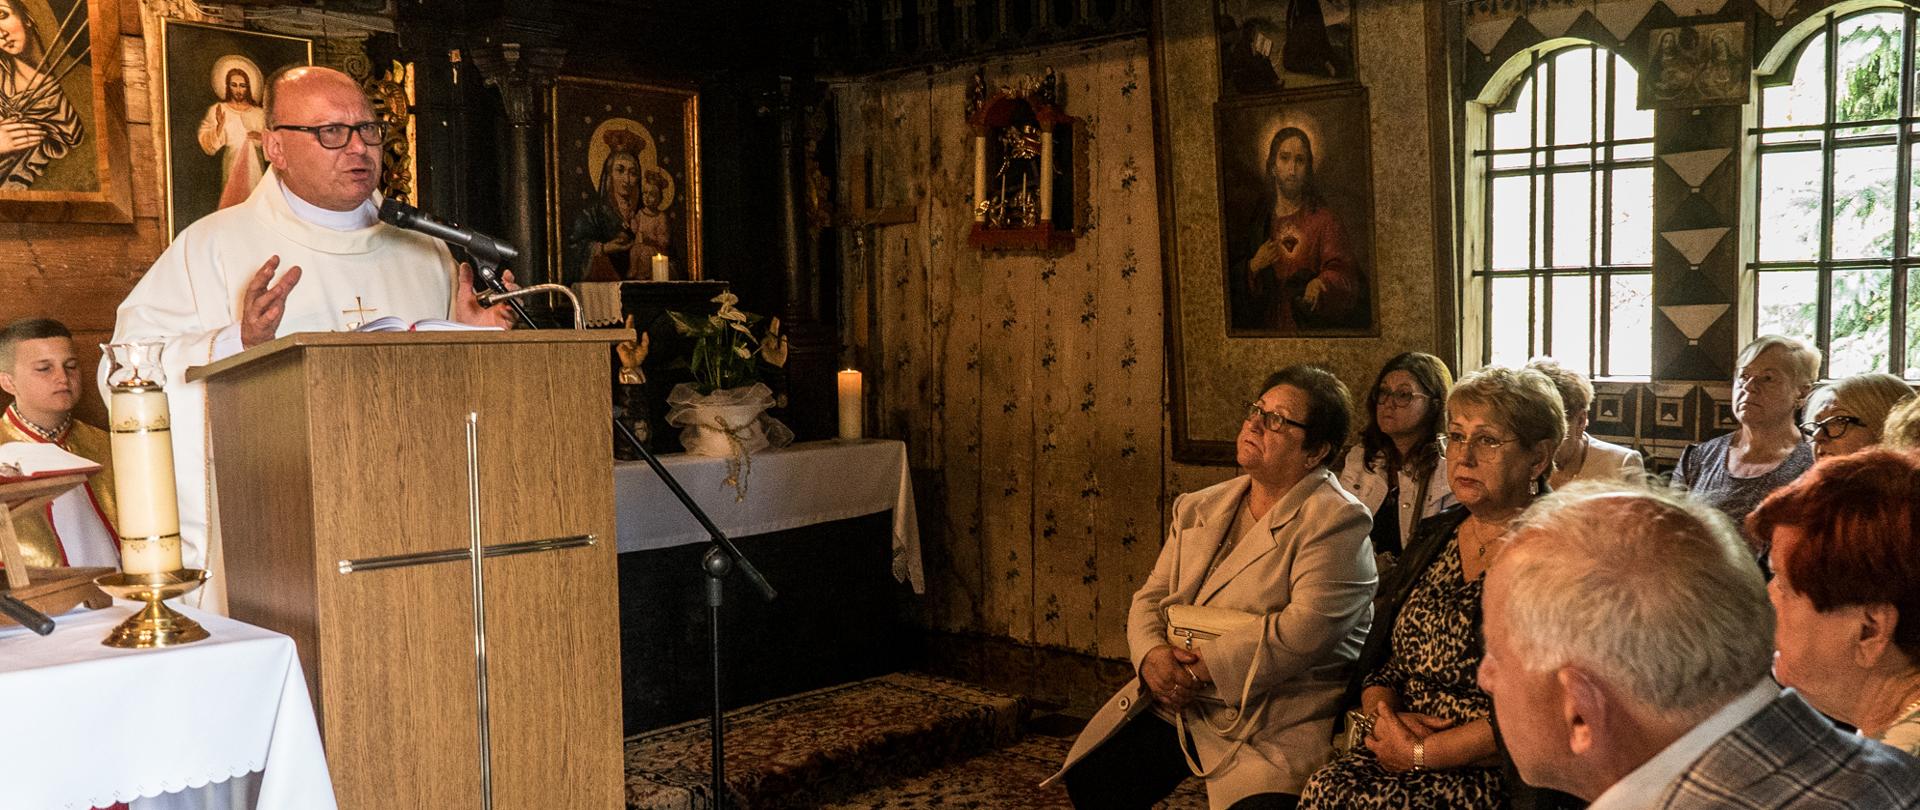 Wnętrze kaplicy z licznymi obrazami na ścianach, ksiądz w białym ornacie przemawia do siedzących wiernych.